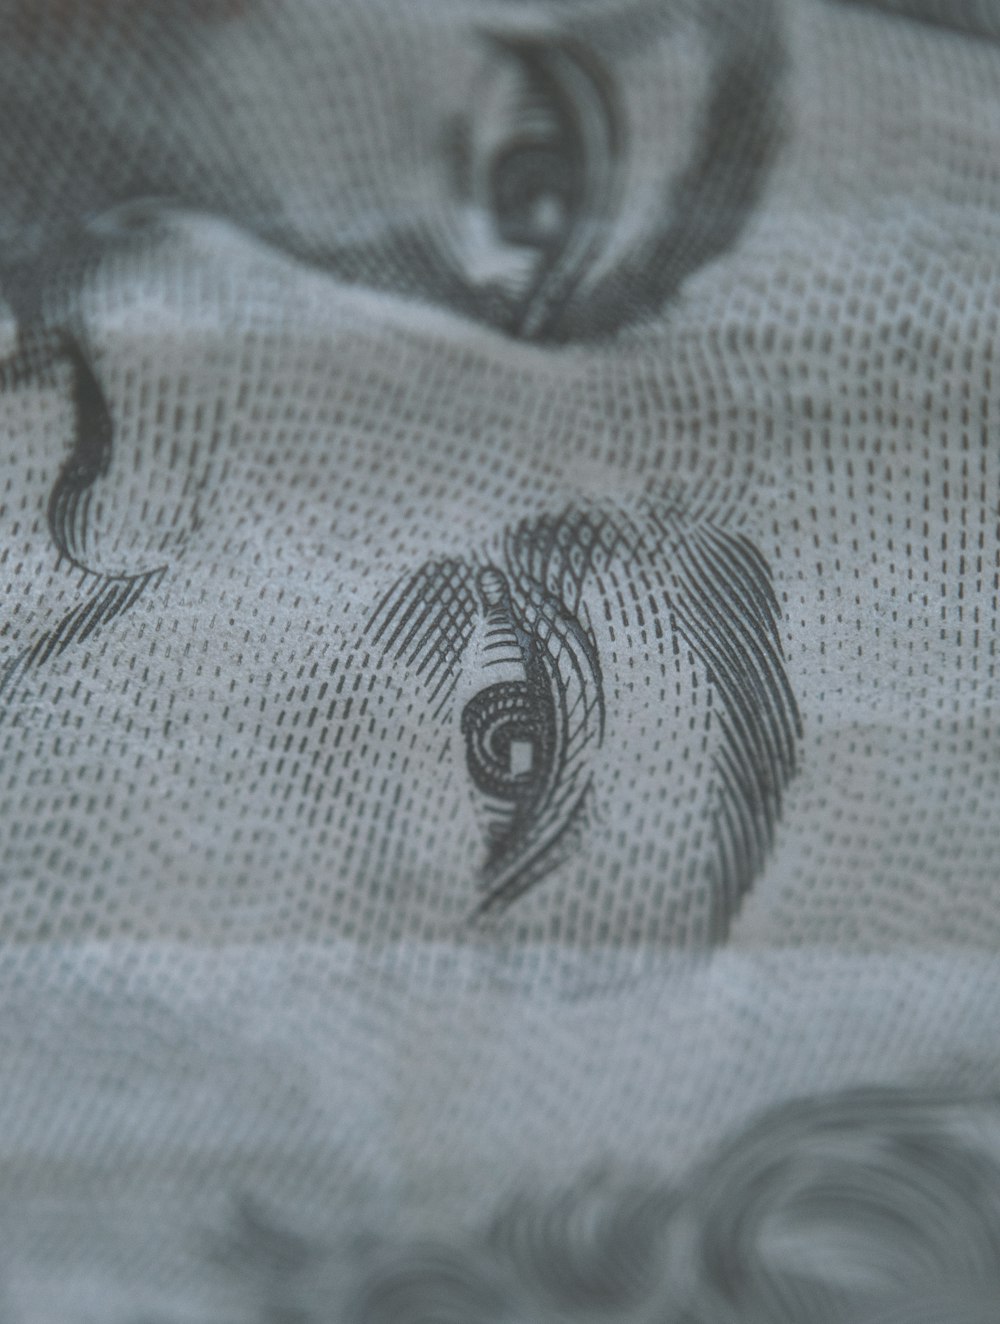 a close up of a ten dollar bill